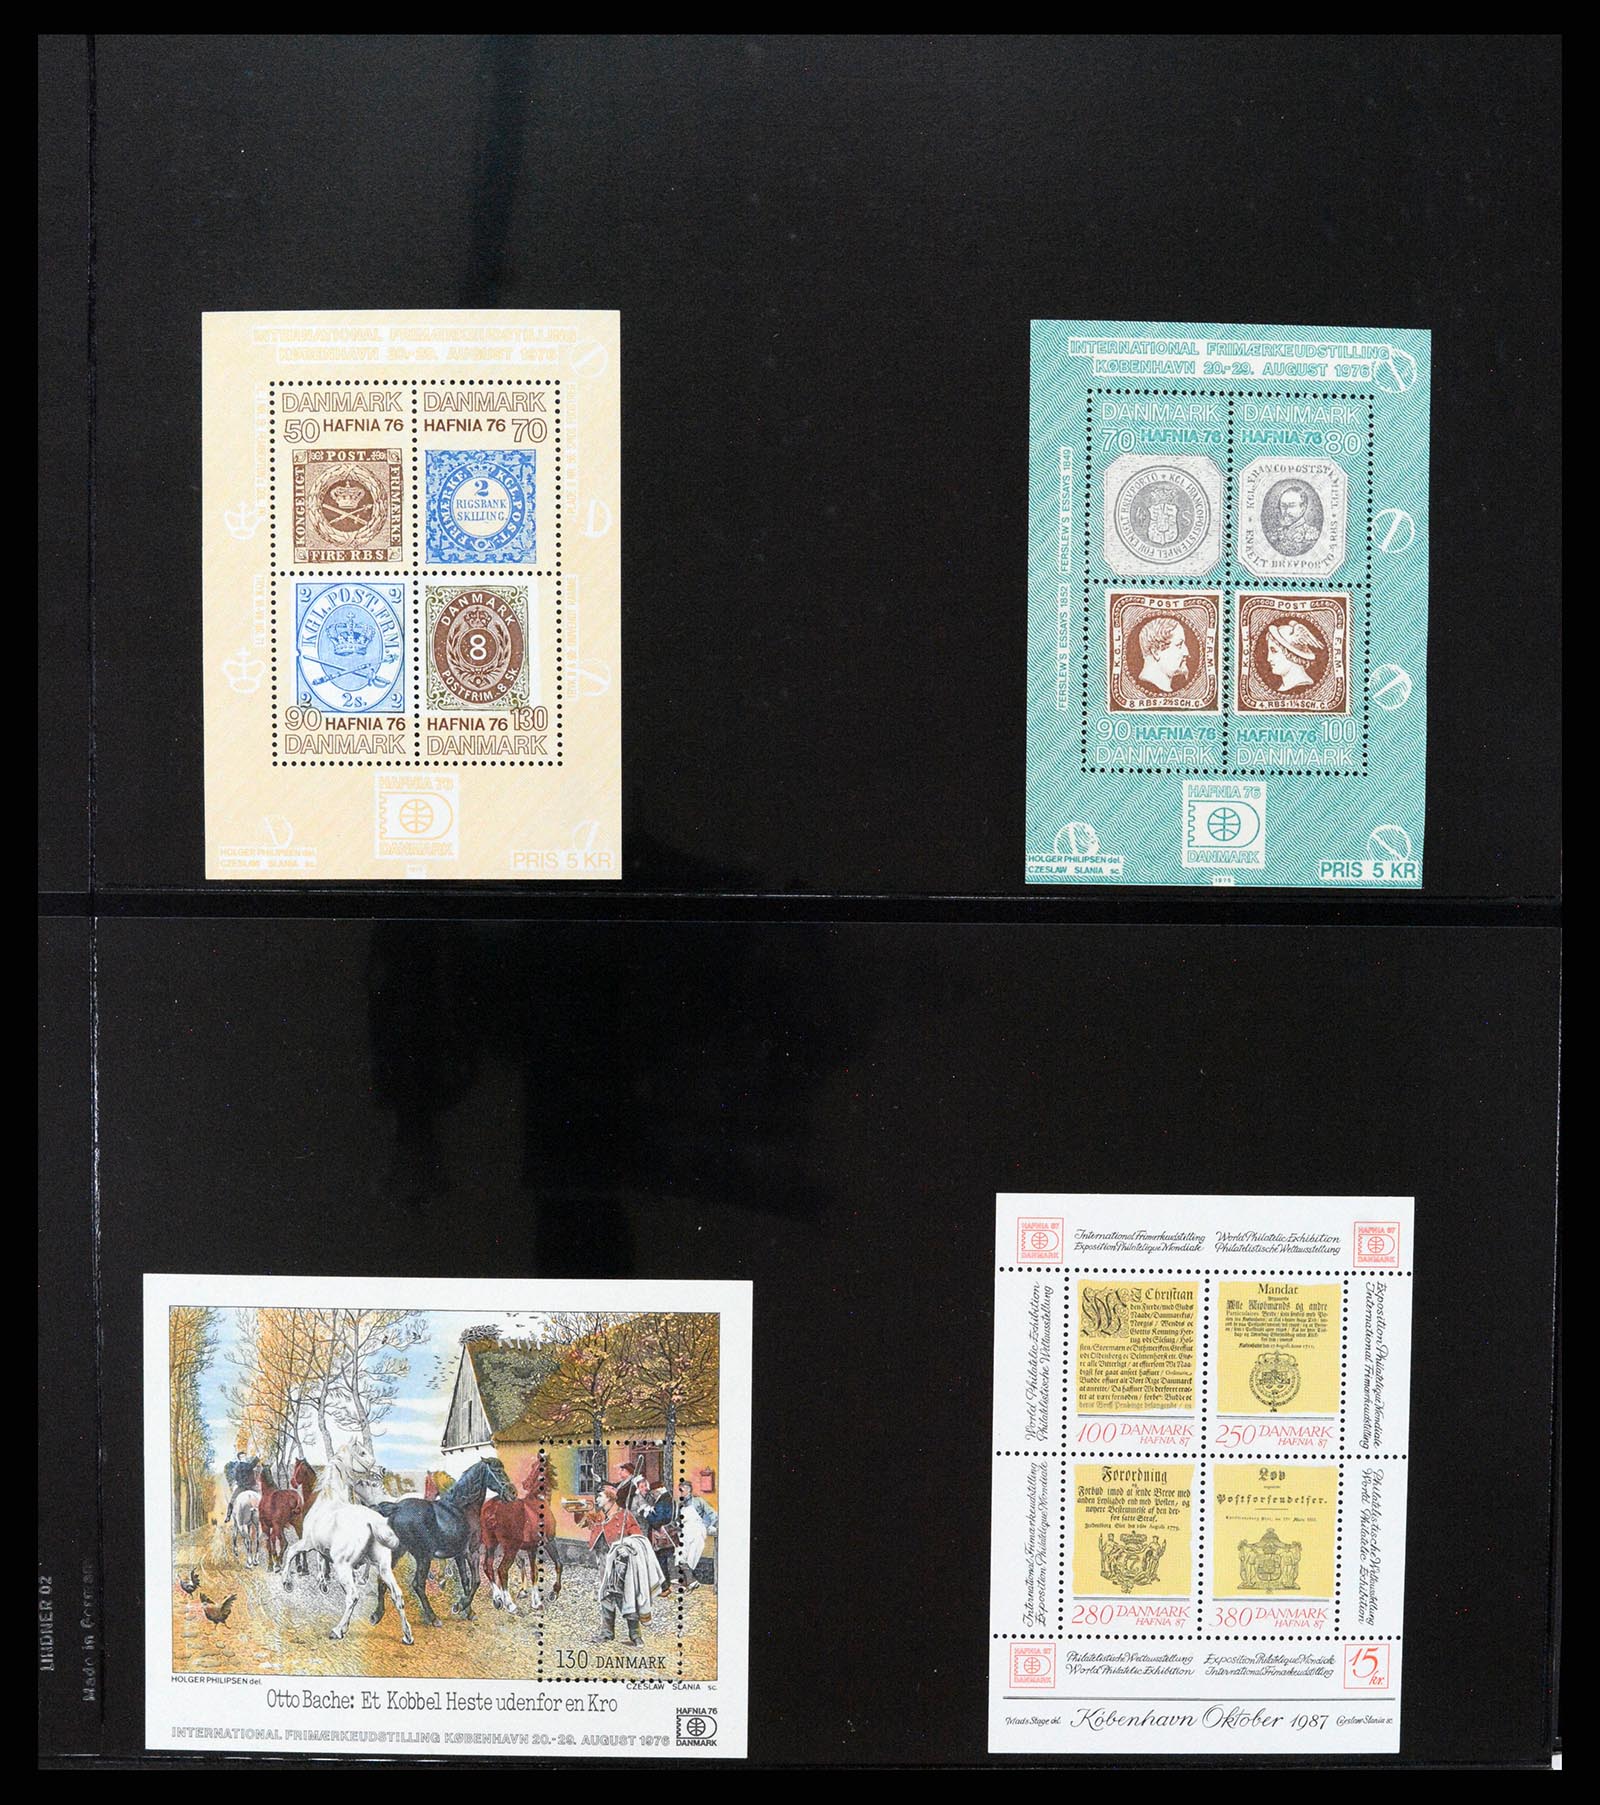 37345 026 - Stamp collection 37345 European countries souvenir sheets.